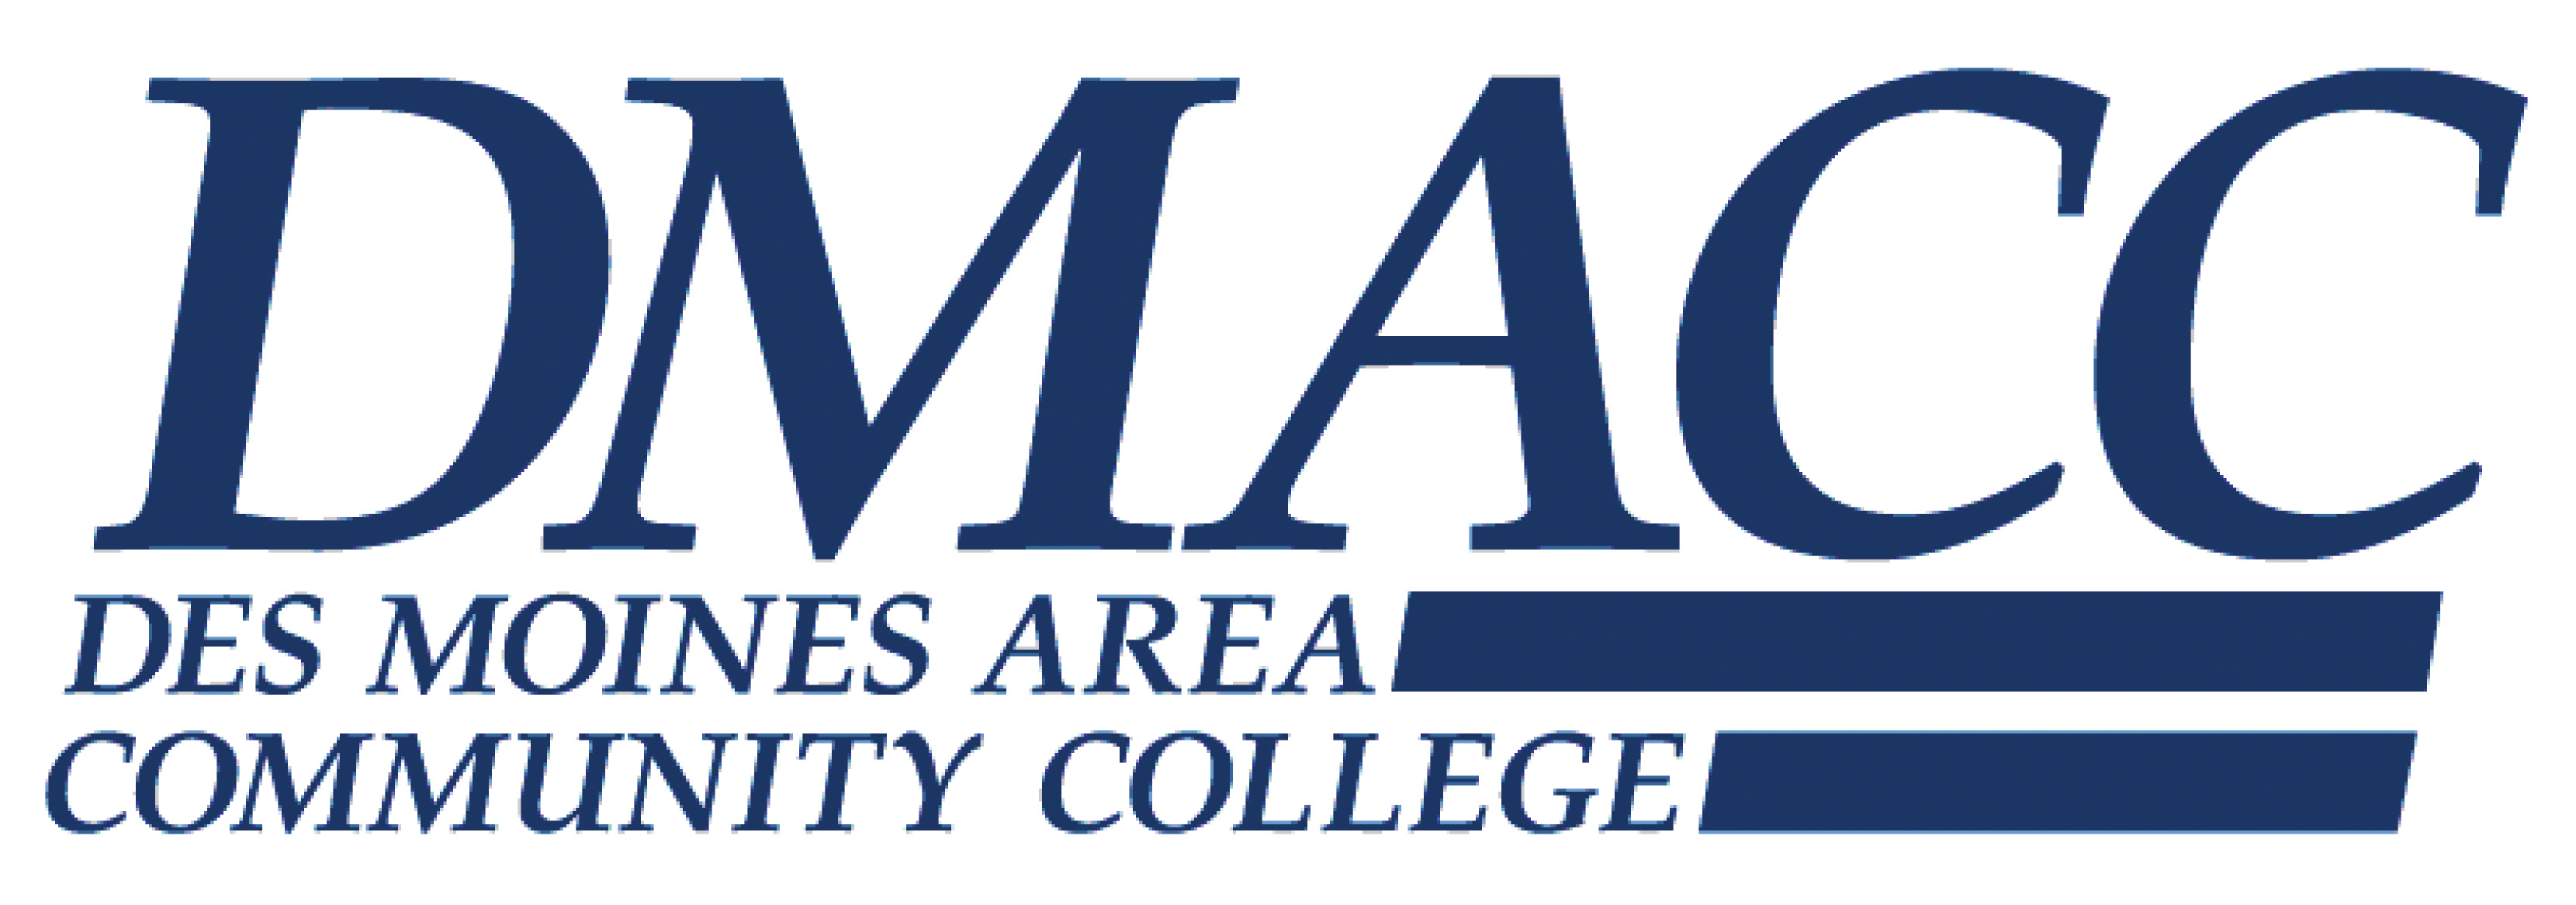 Des Moines Area Community College